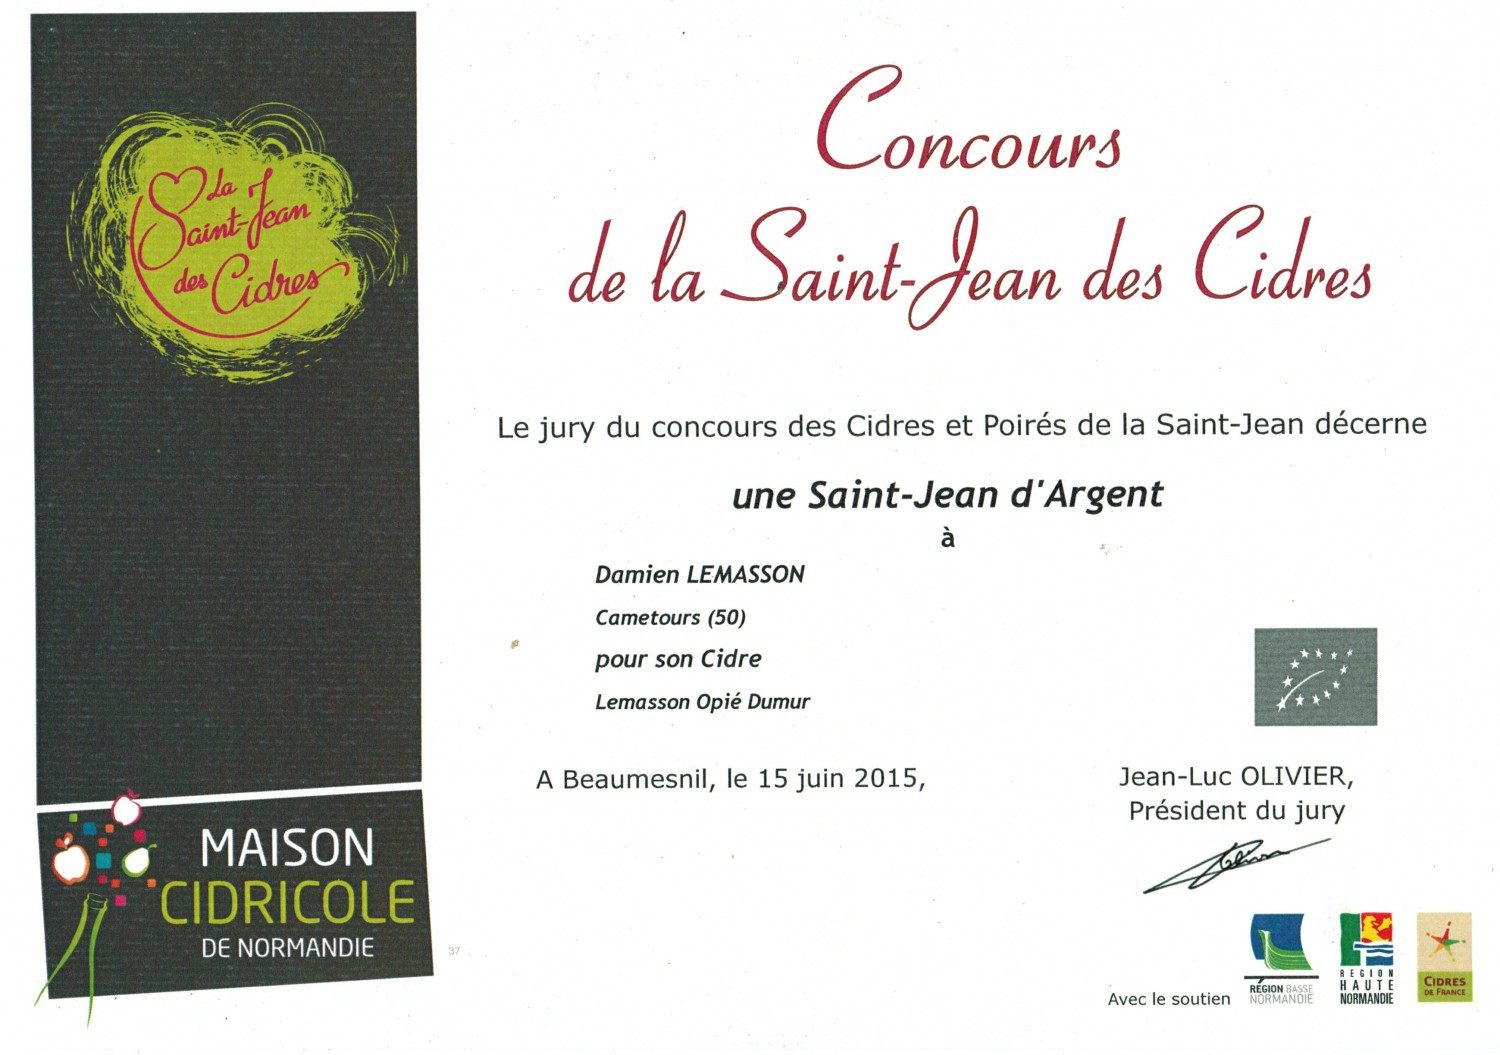 Concours St Jean des Cidres